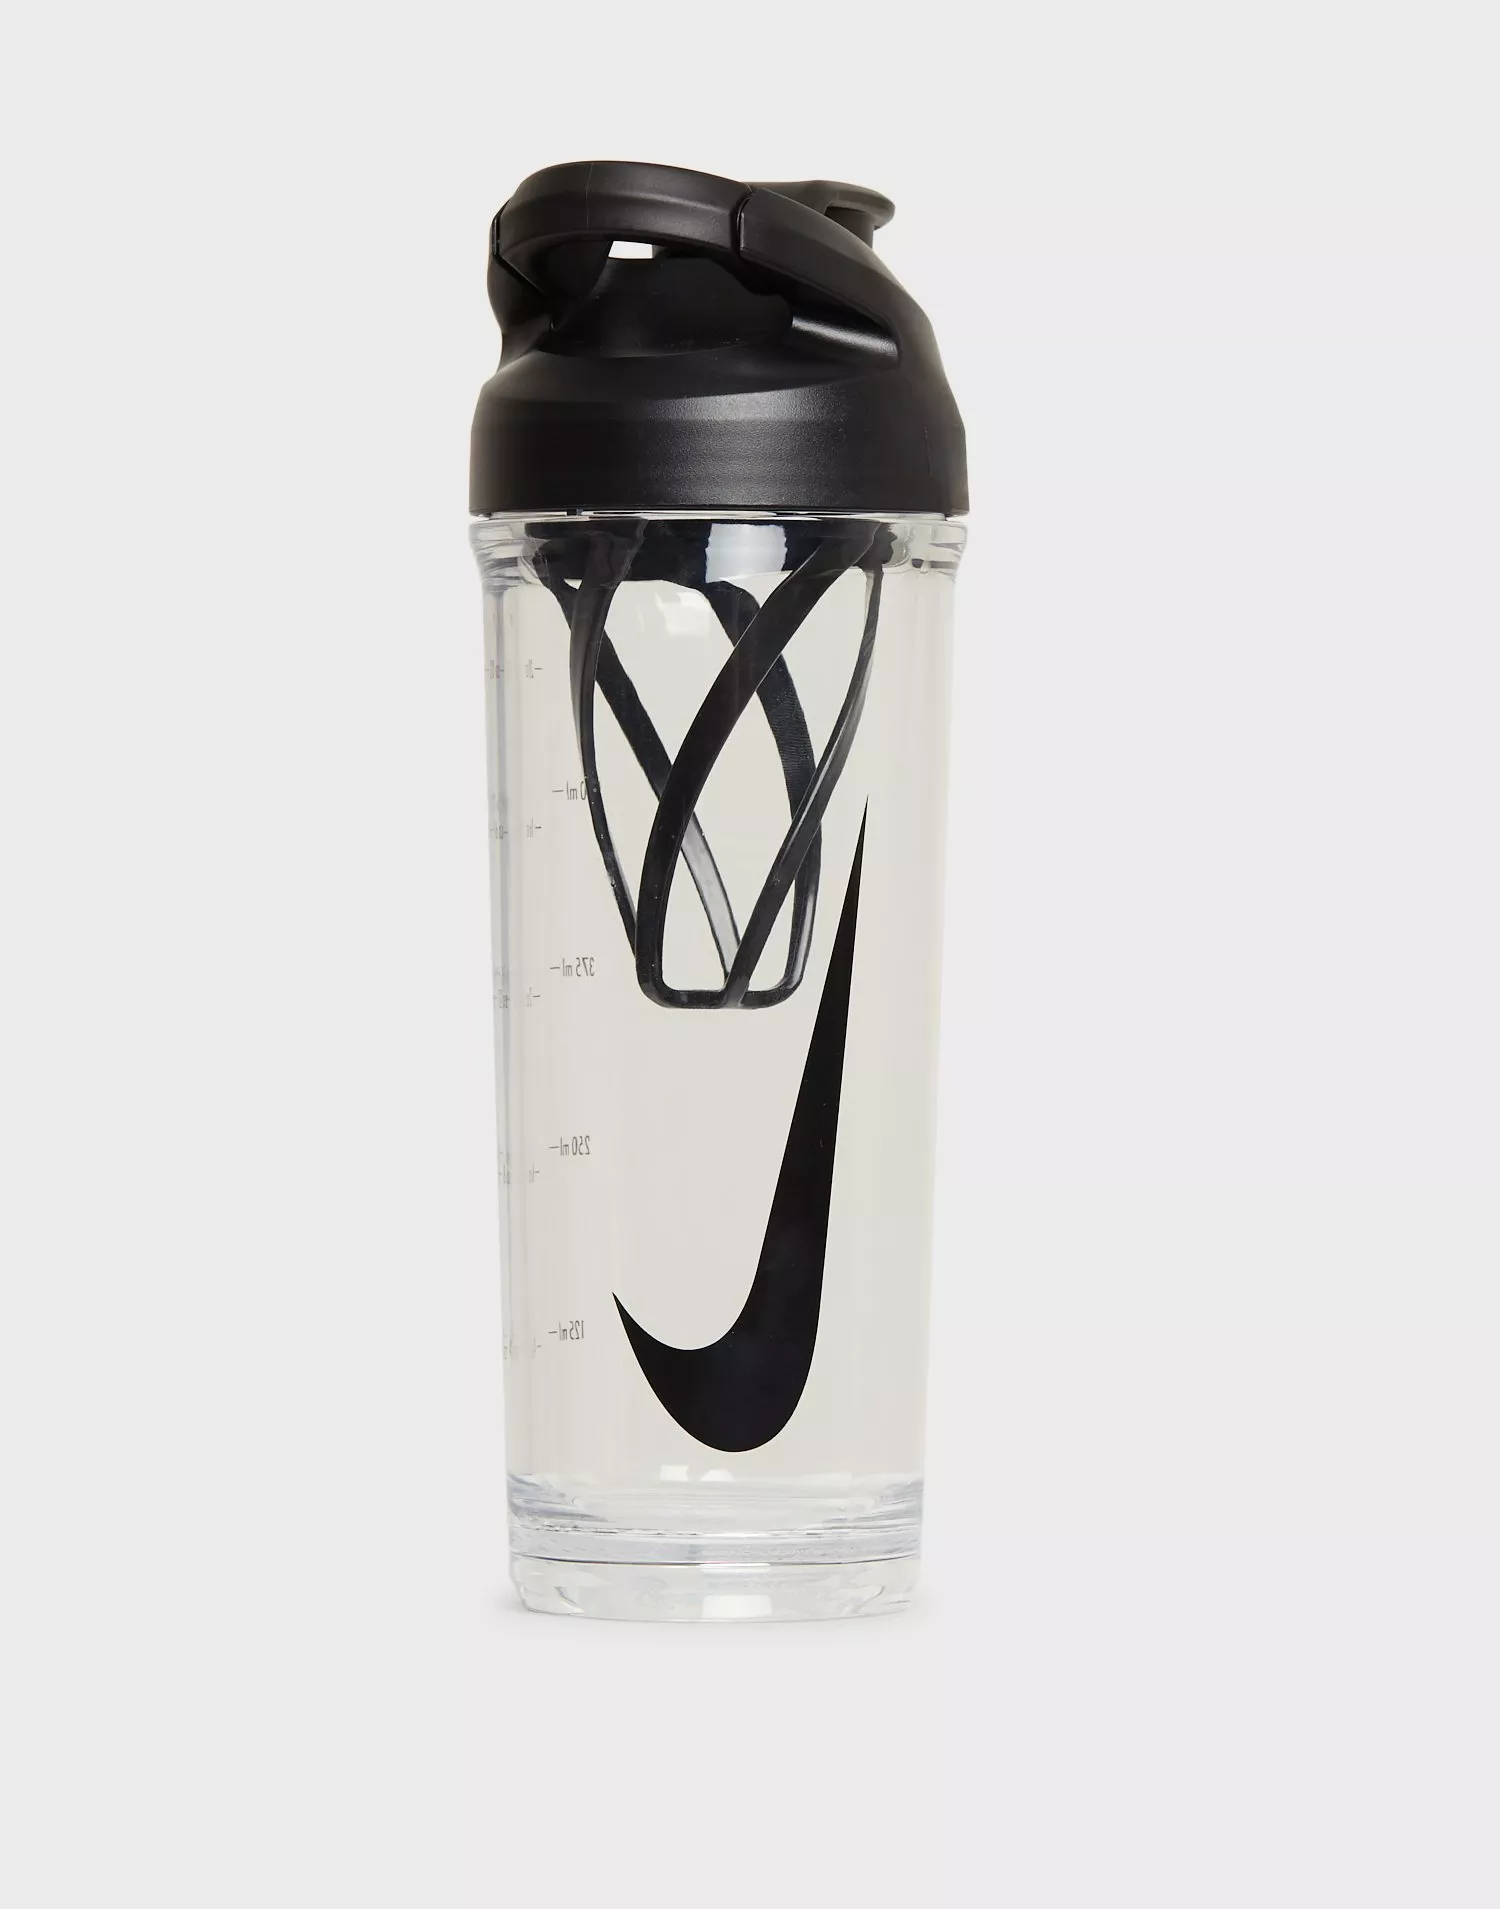 Nike 24oz TR HyperCharge Shaker Bottle.